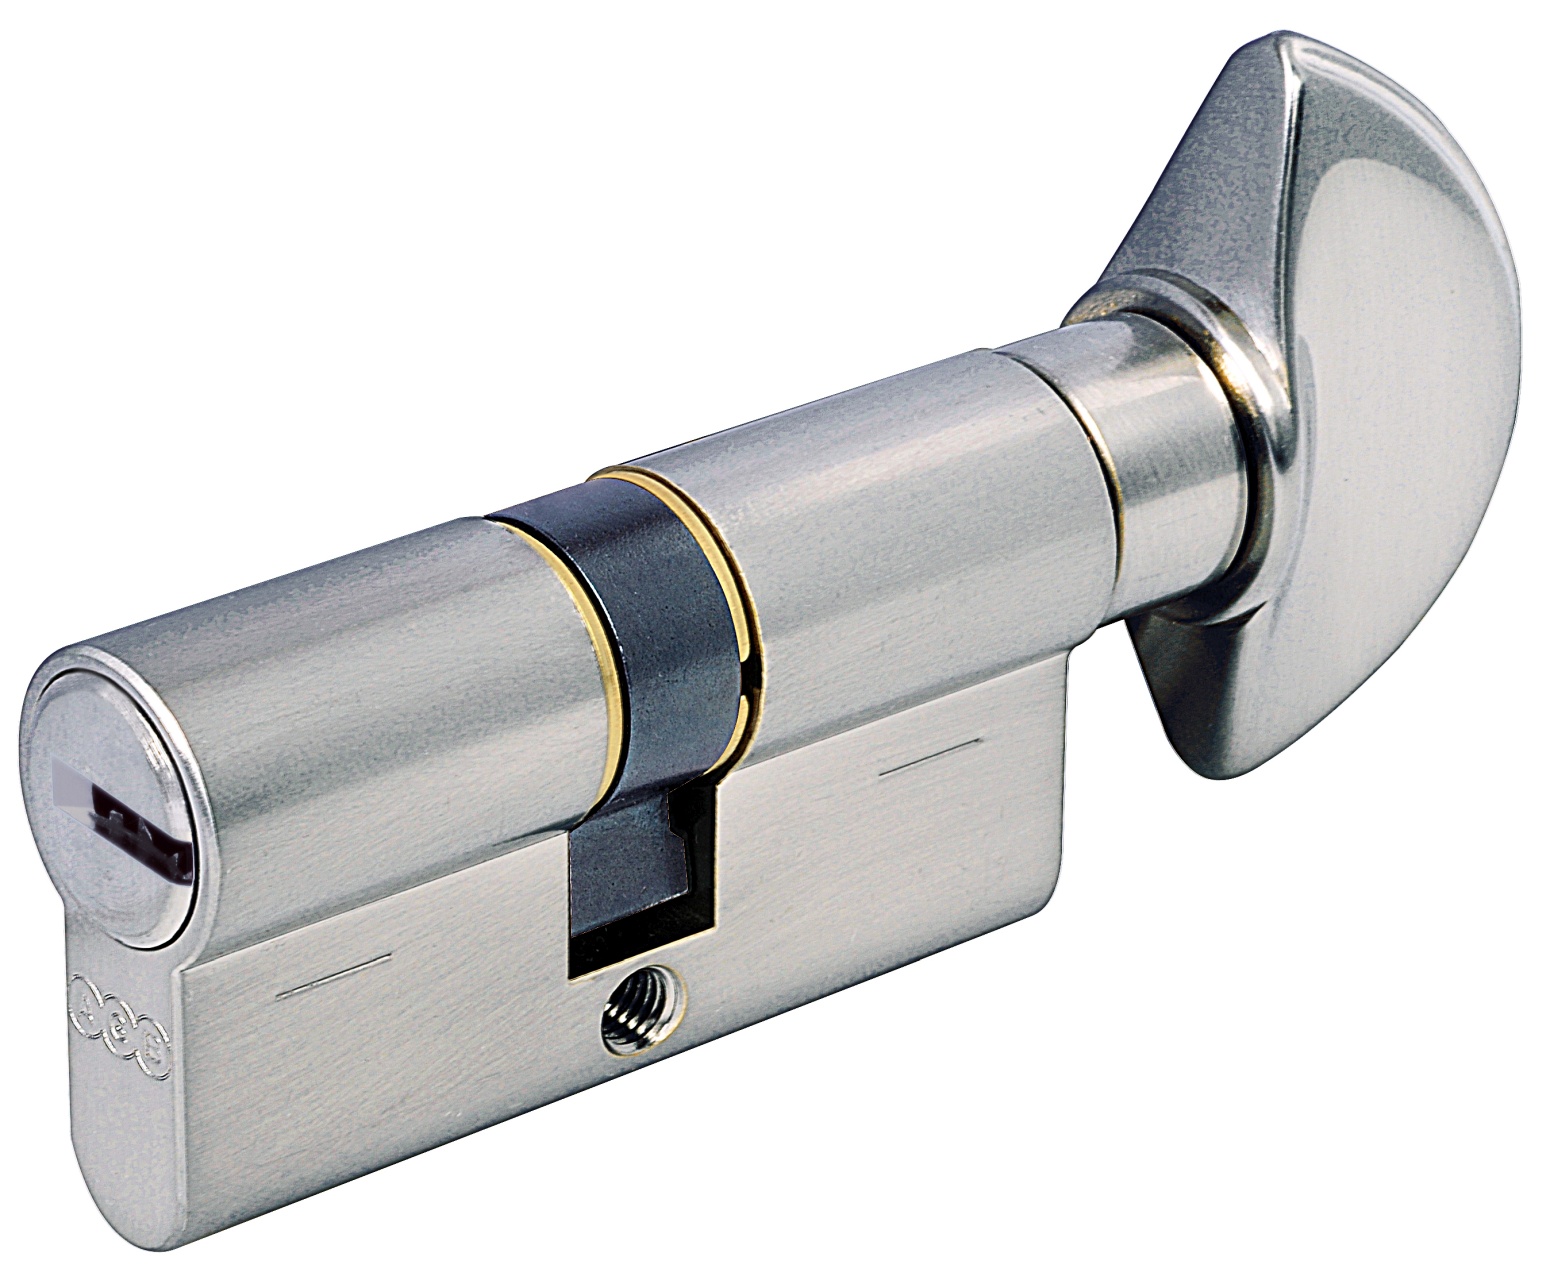 AGB -  Cilindro SCUDO 5000 PS frizionato anti bamping con chiave e pomolo - col. NICHELATO OPACO - lunghezza 105 - misura P-40-10-55